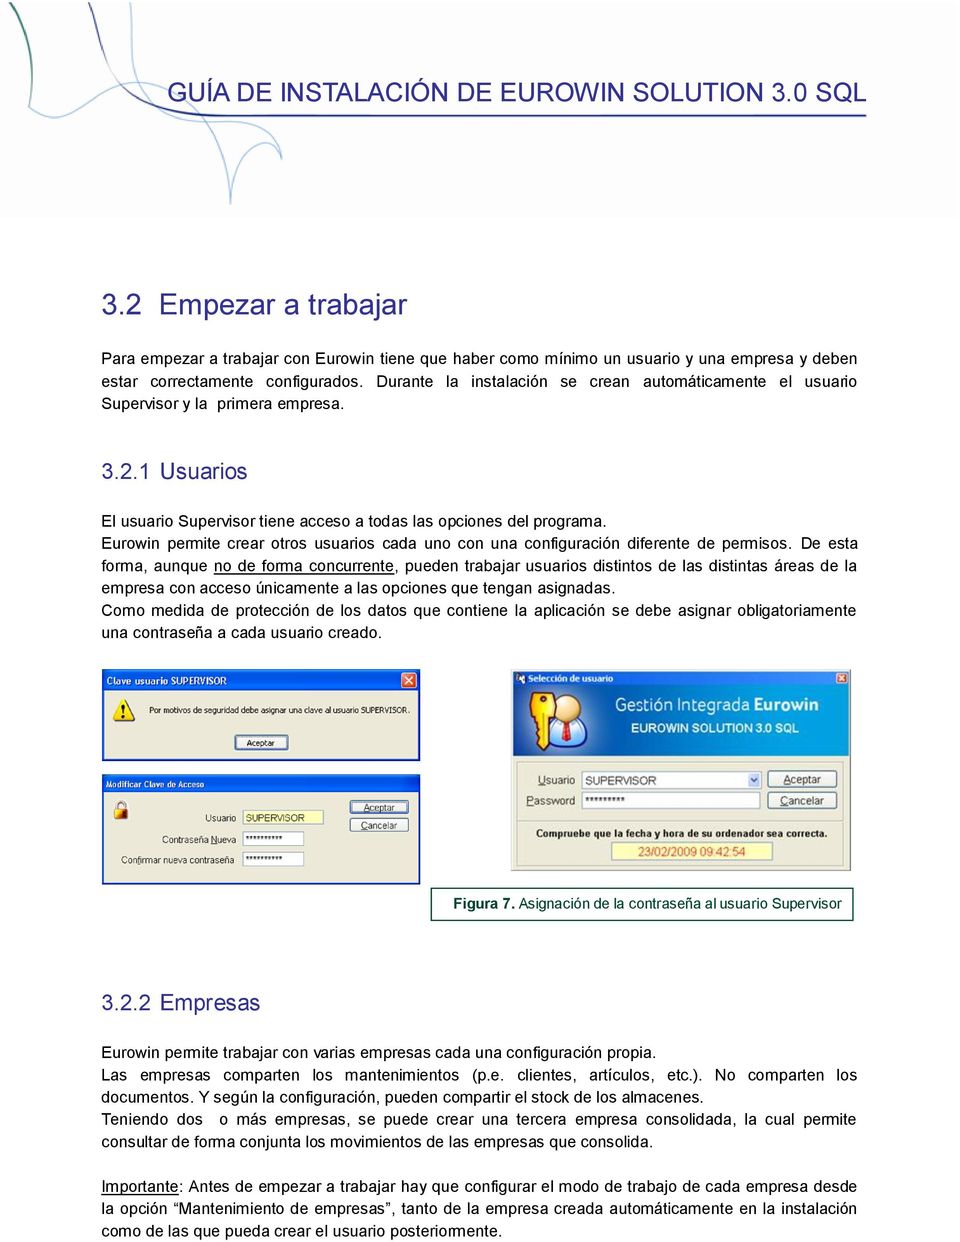 Eurowin permite crear otros usuarios cada uno con una configuración diferente de permisos.